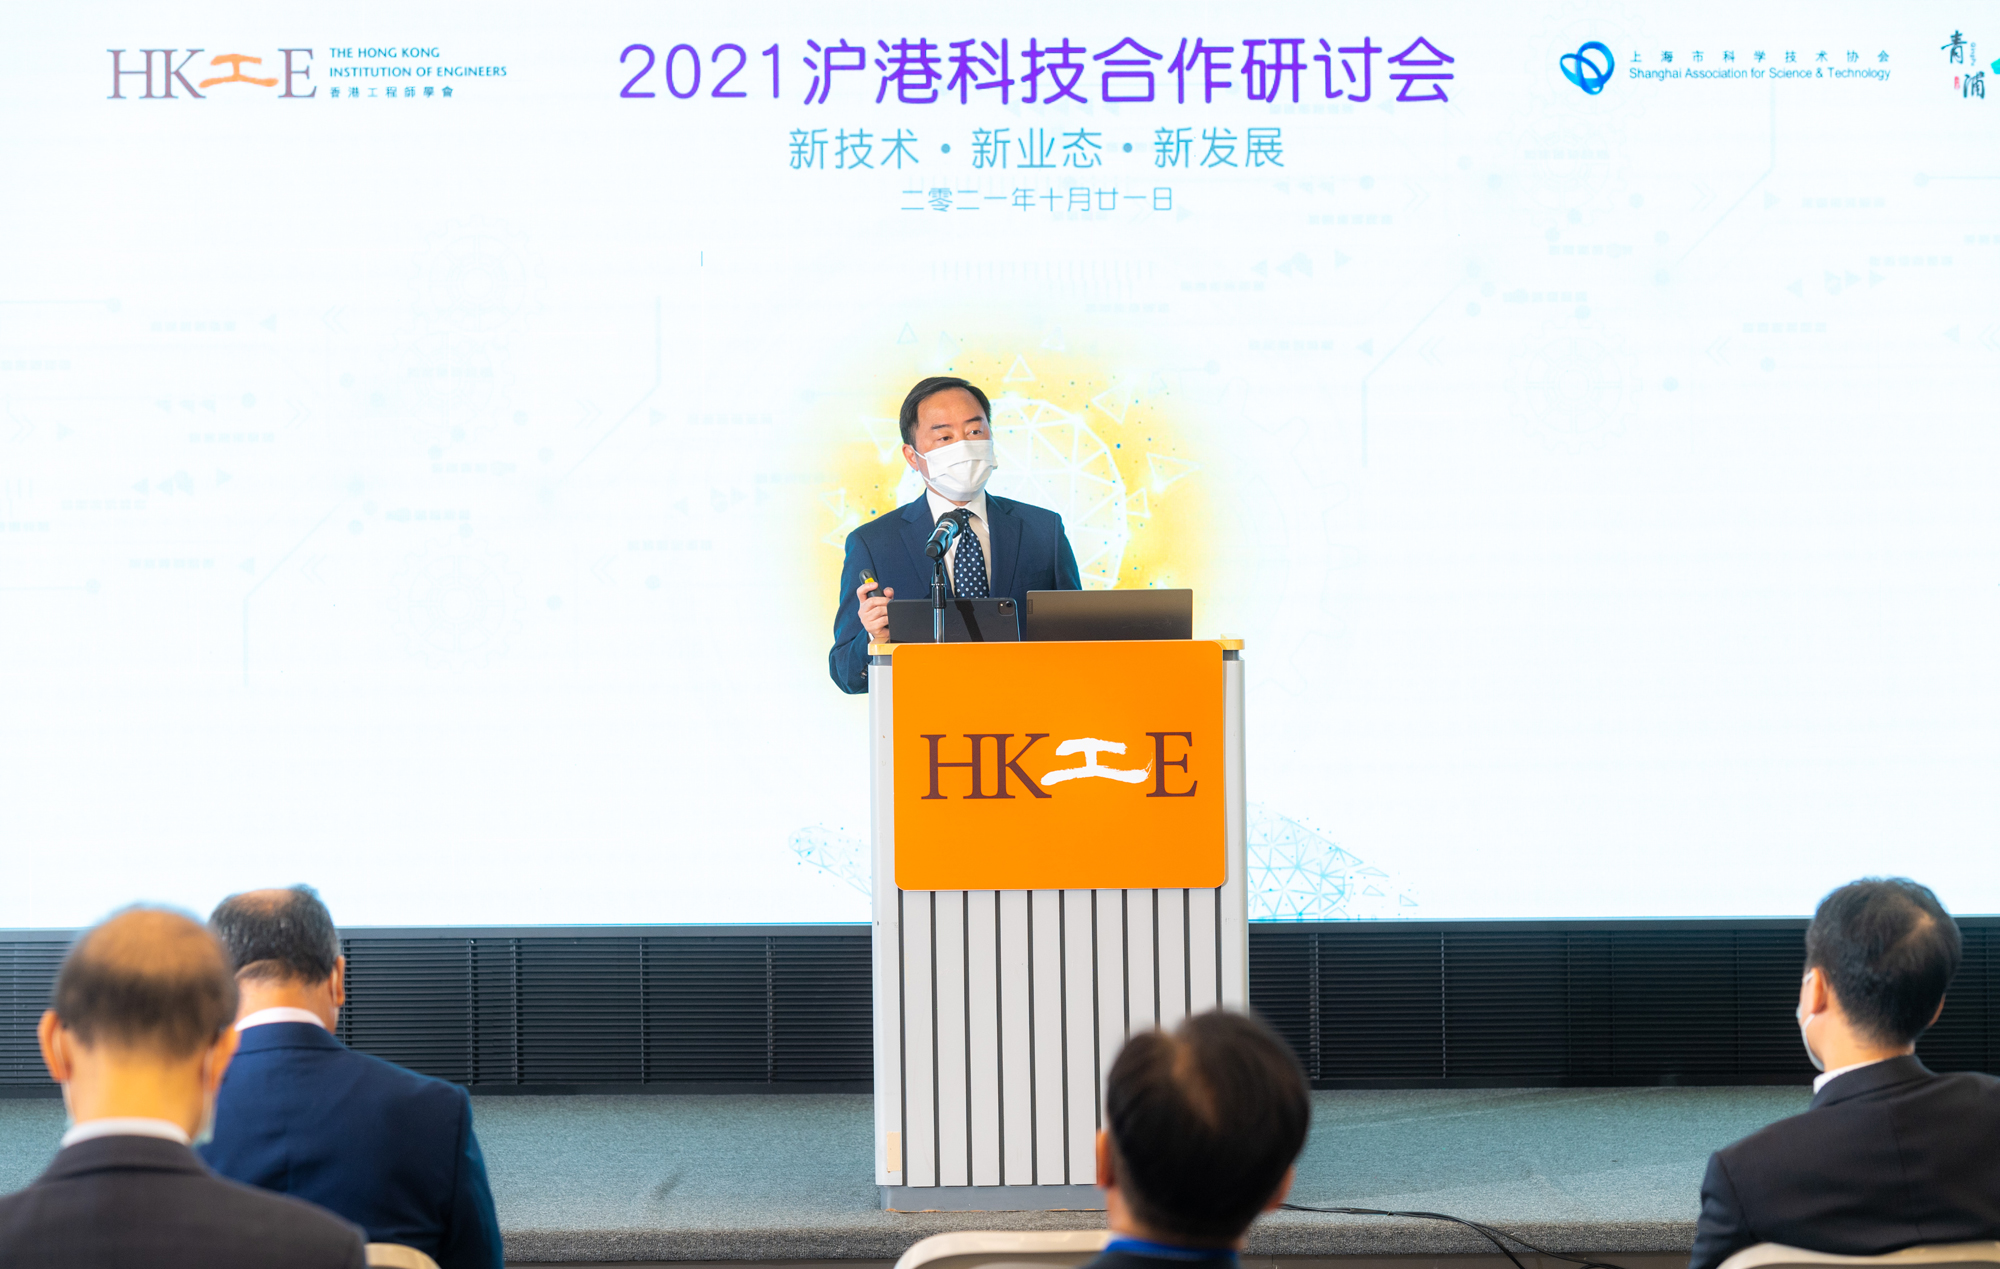 副政府資訊科技總監黃志光先生於「2021滬港科技合作研討會」致辭